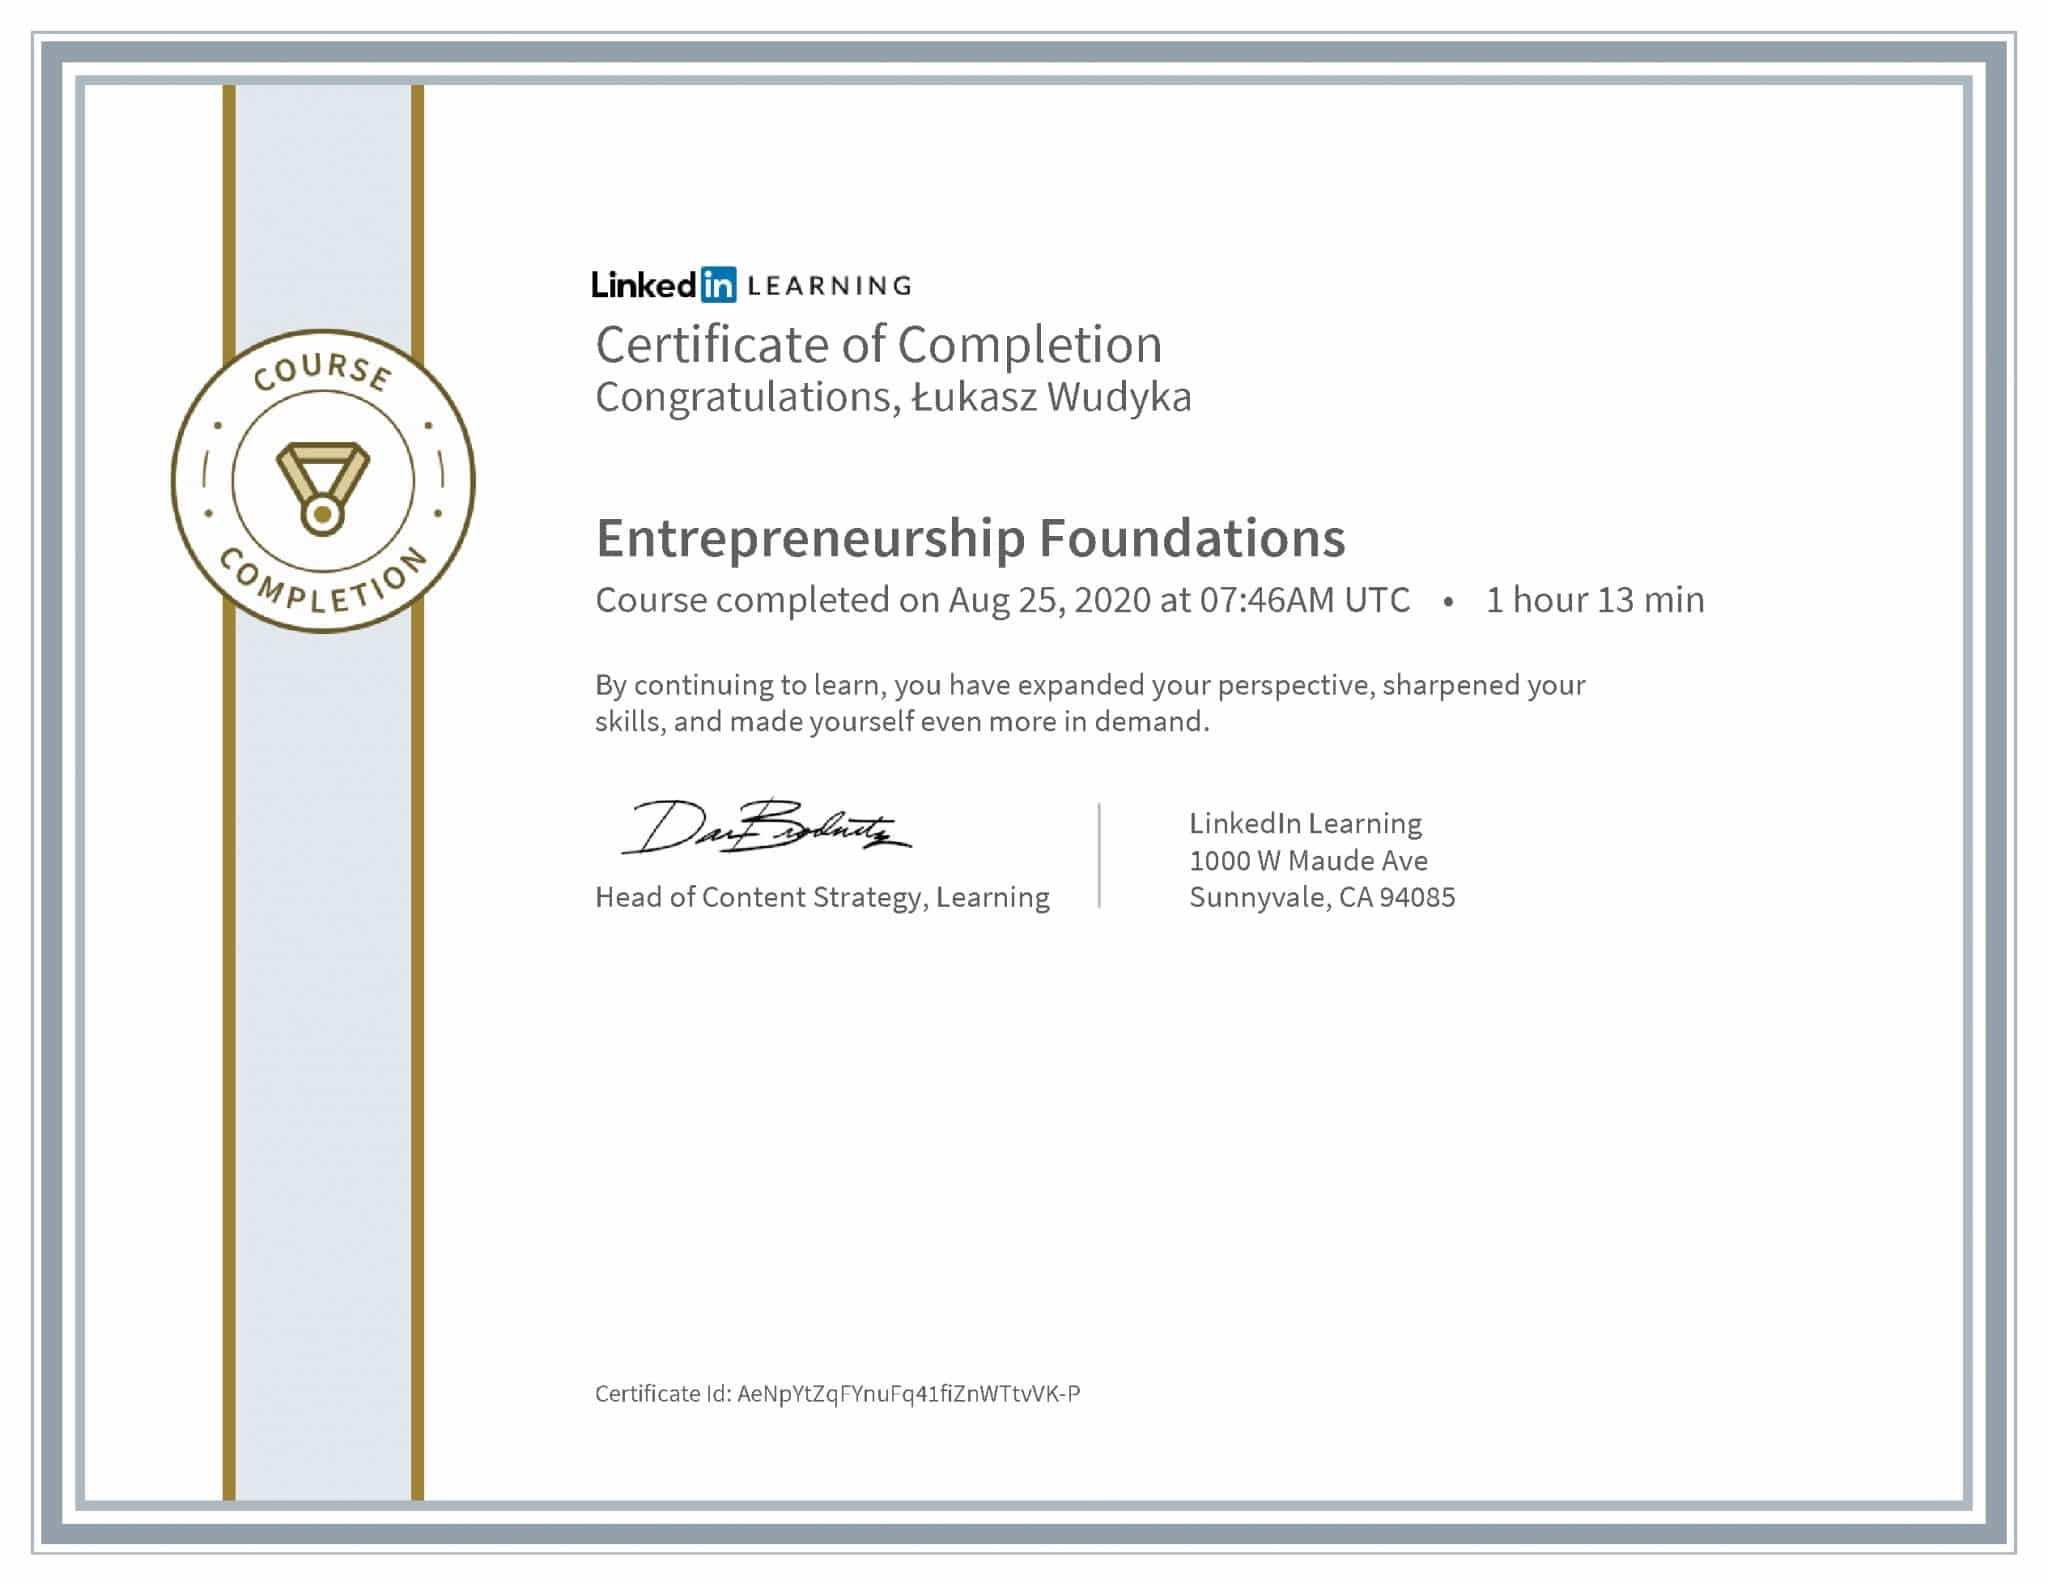 Łukasz Wudyka certyfikat LinkedIn Entrepreneurship Foundations